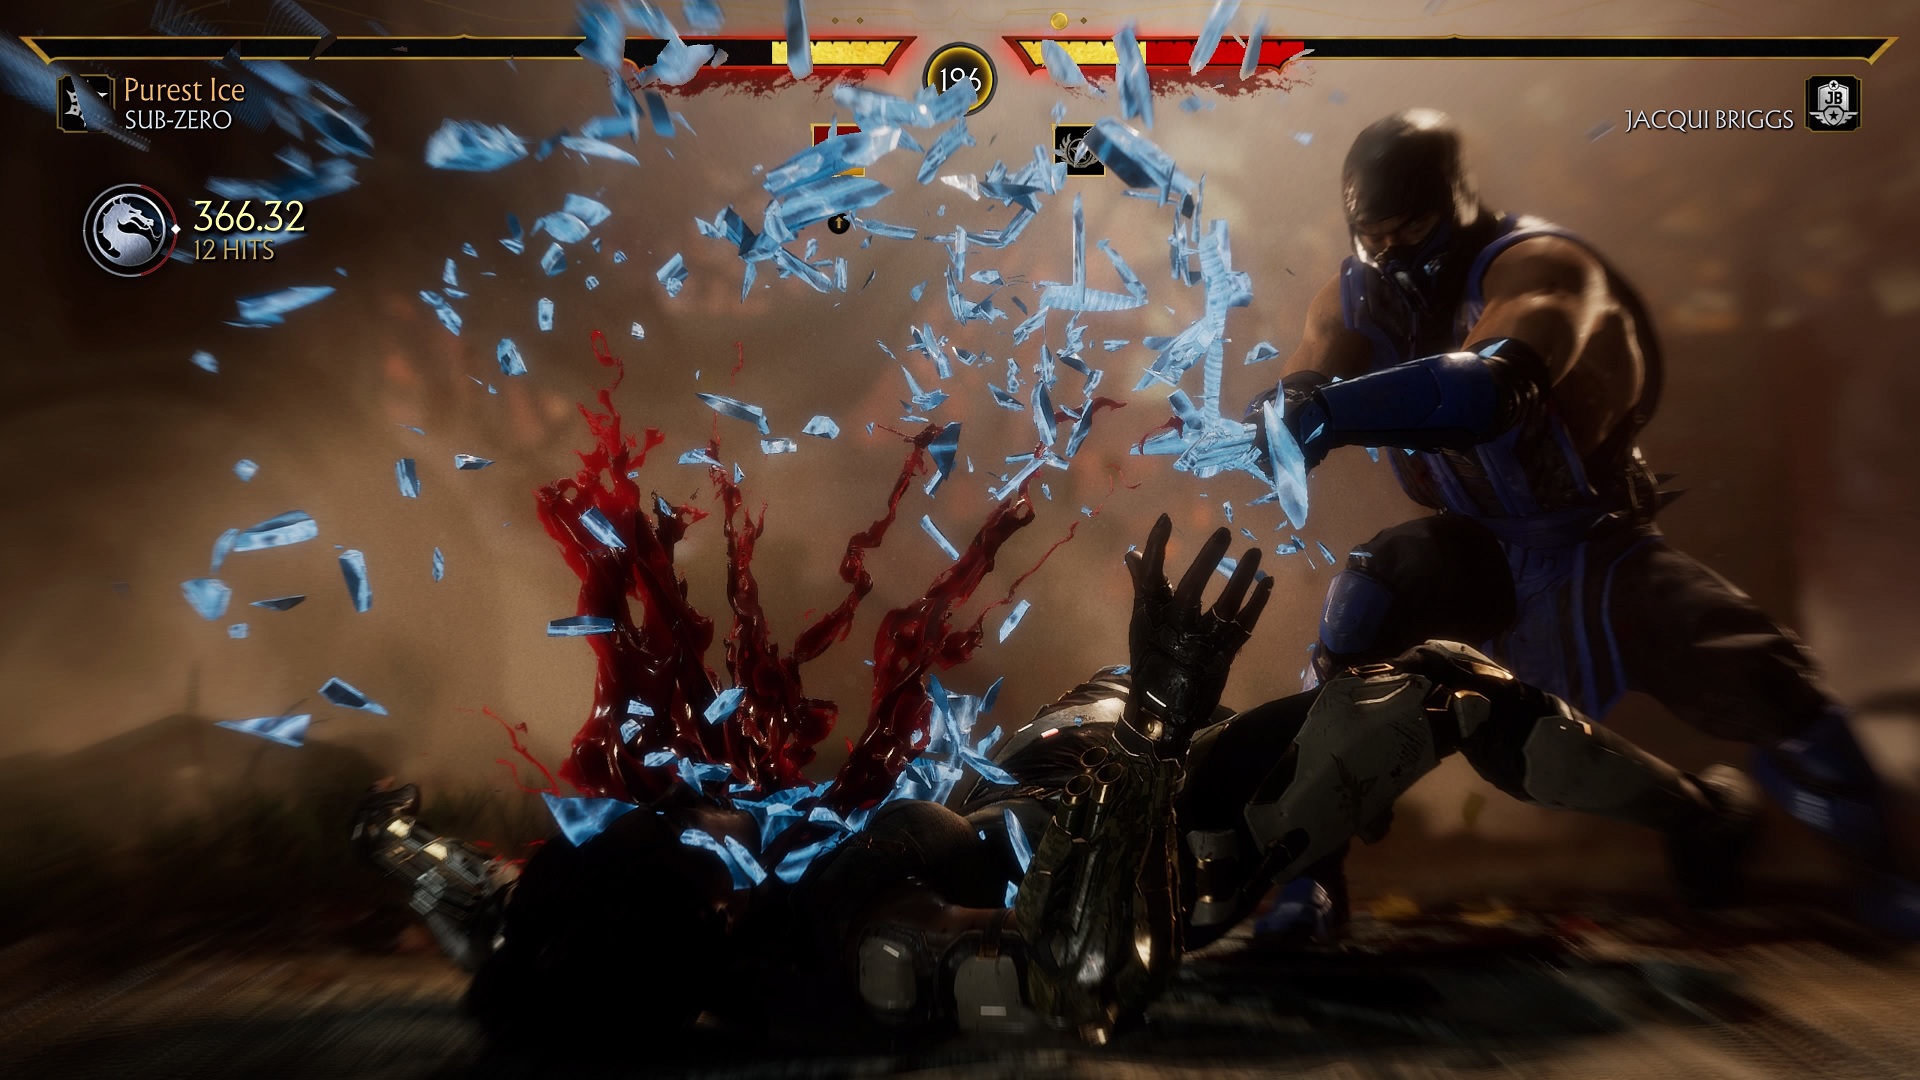 نقد و بررسی بازی Mortal Kombat 11